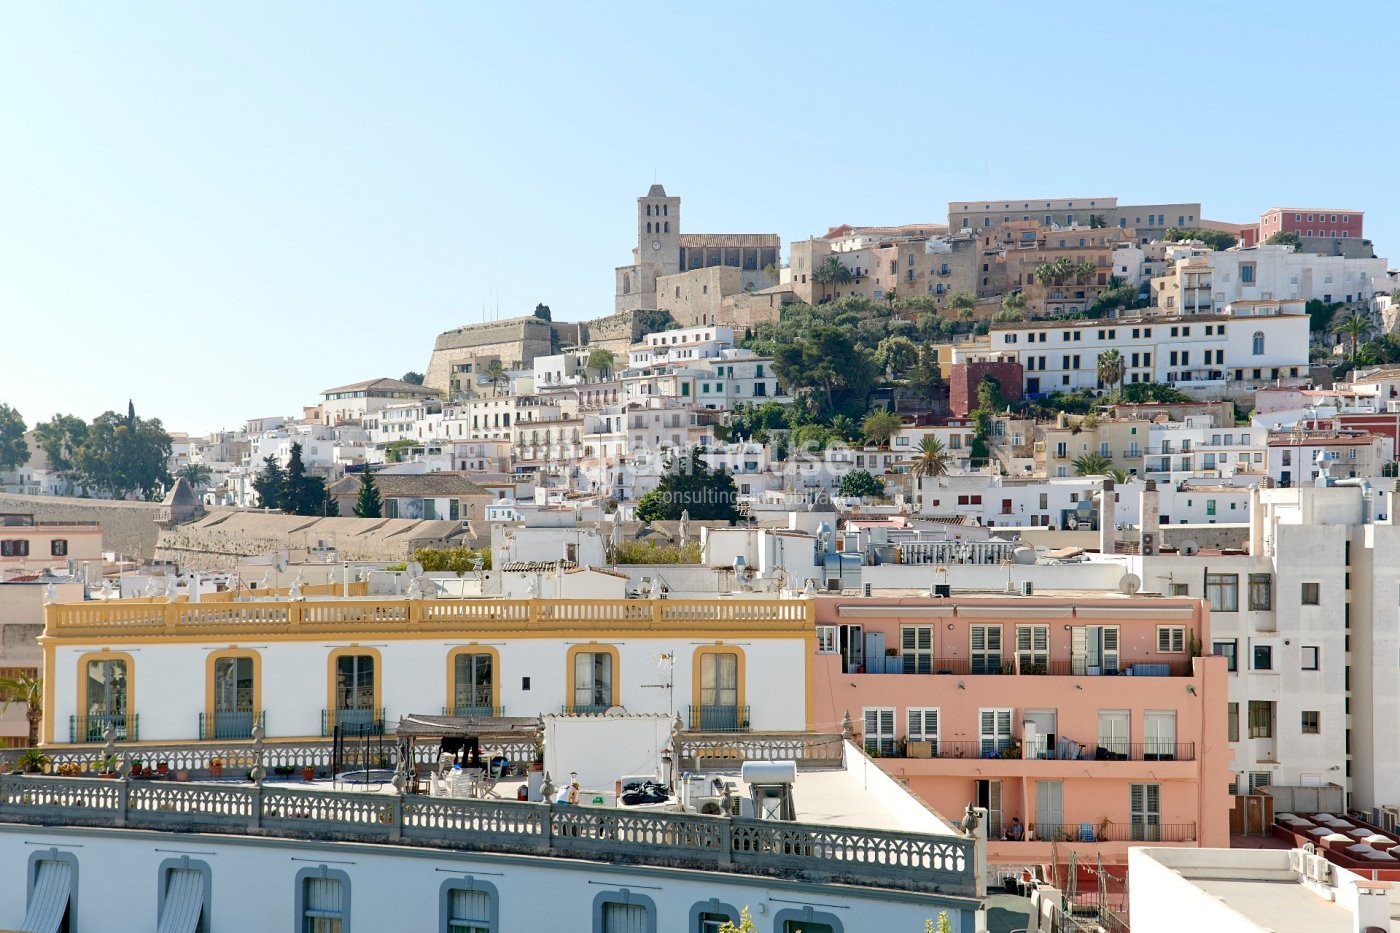 Komplett renoviertes Penthouse mit unglaublichem Blick auf den Hafen und Dalt Vila in Ibiza-Stadt